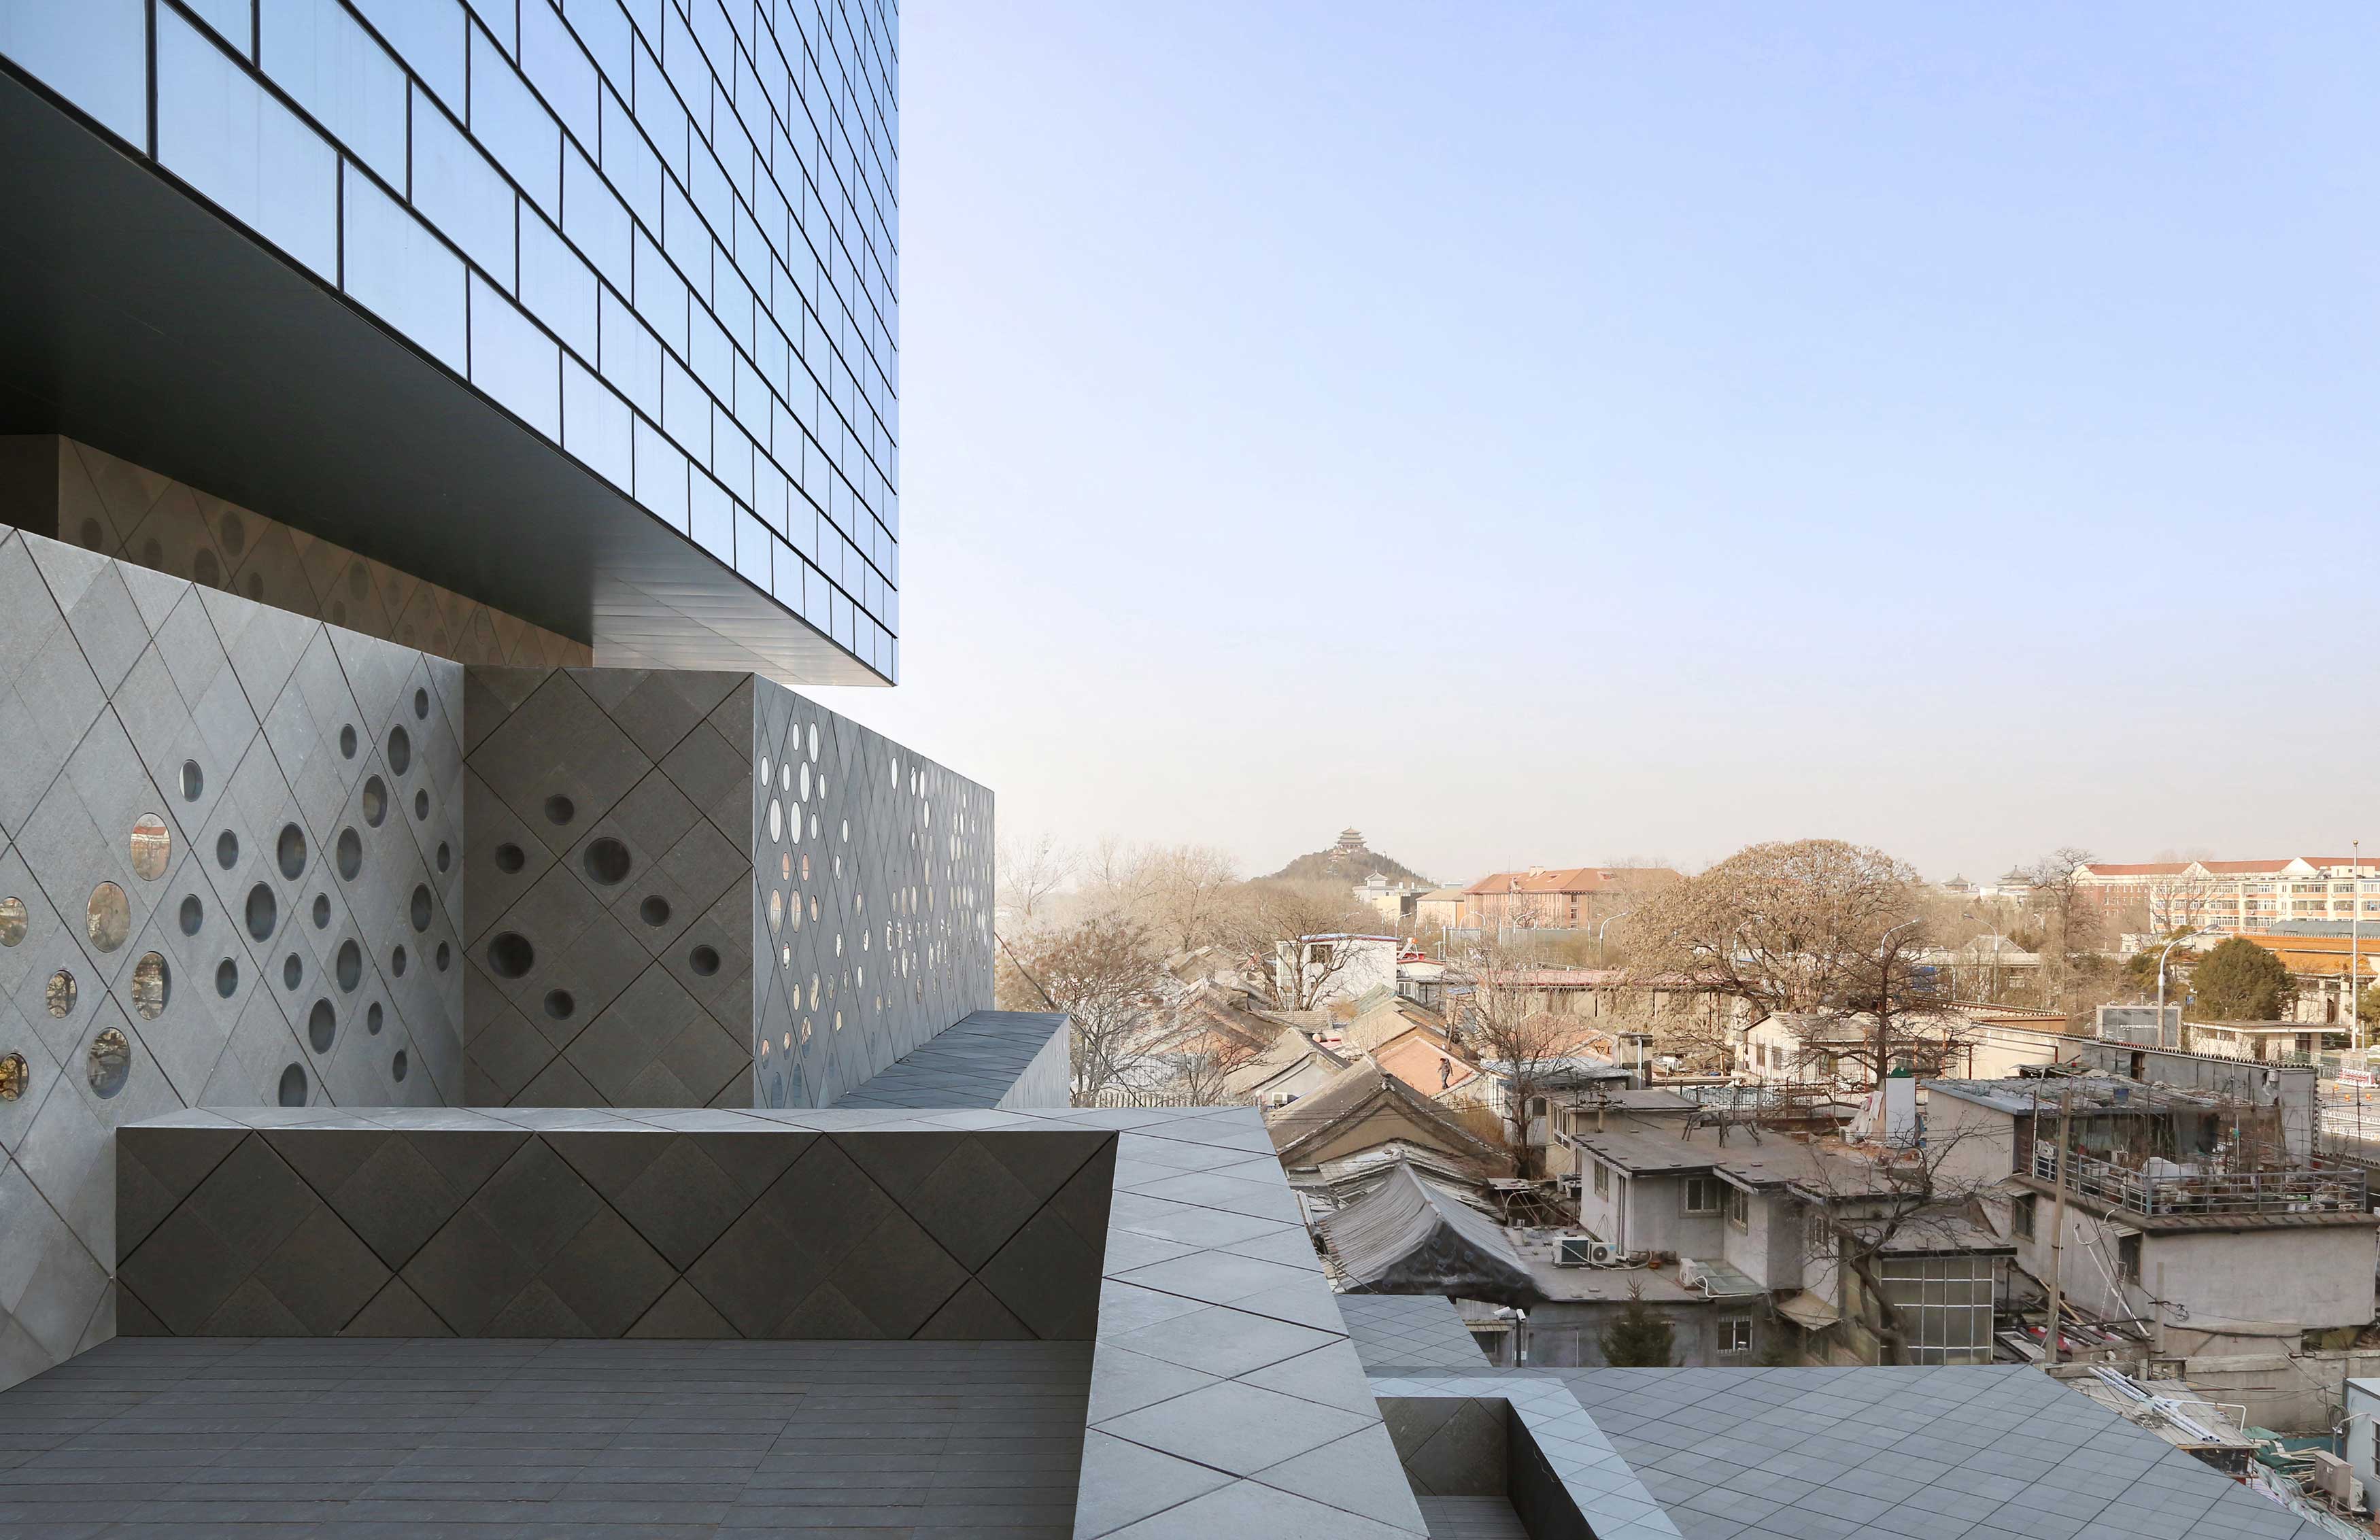 Guardian Art Center in Beijing designed by Buro Ole Scheeren